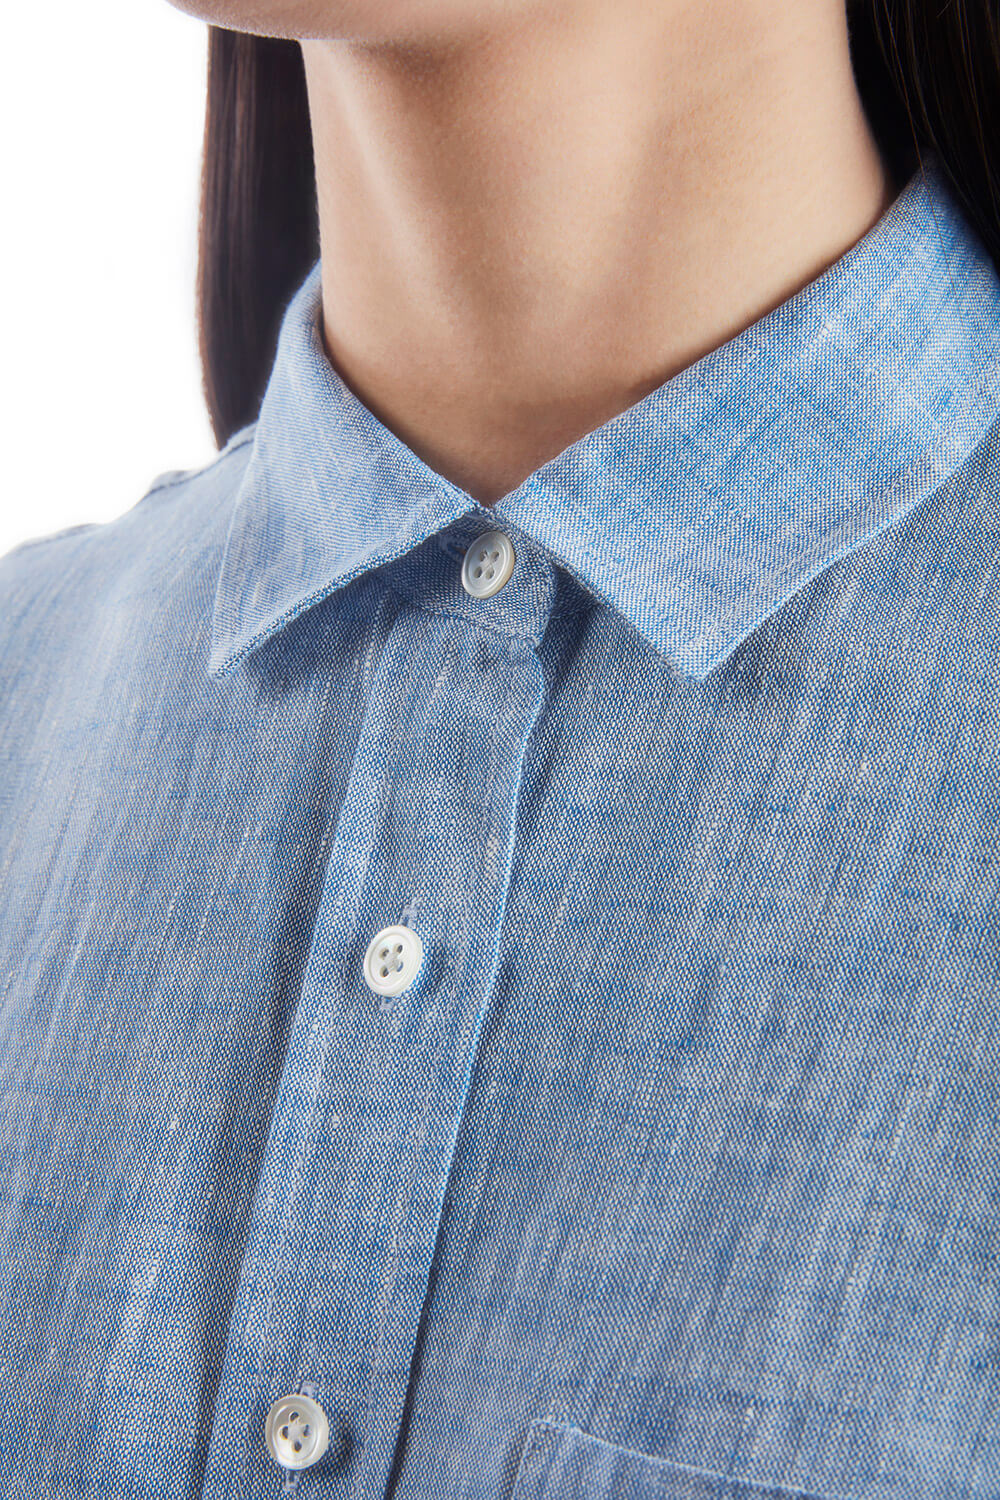 A woman wearing a chambray button down shirt